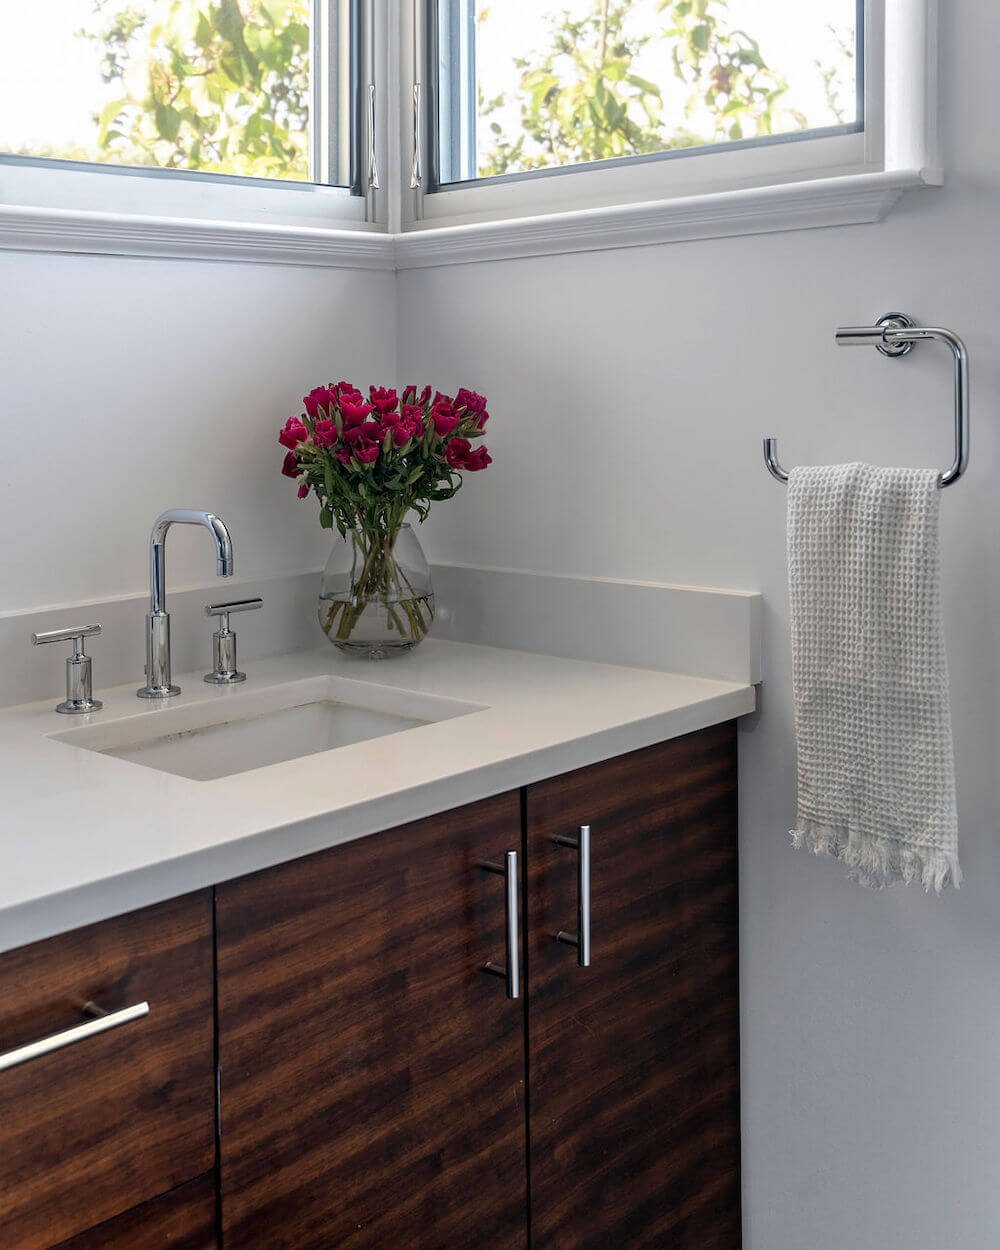 Sequoyah Oakland Bathroom Remodel - Bathroom Vanity Details.jpg